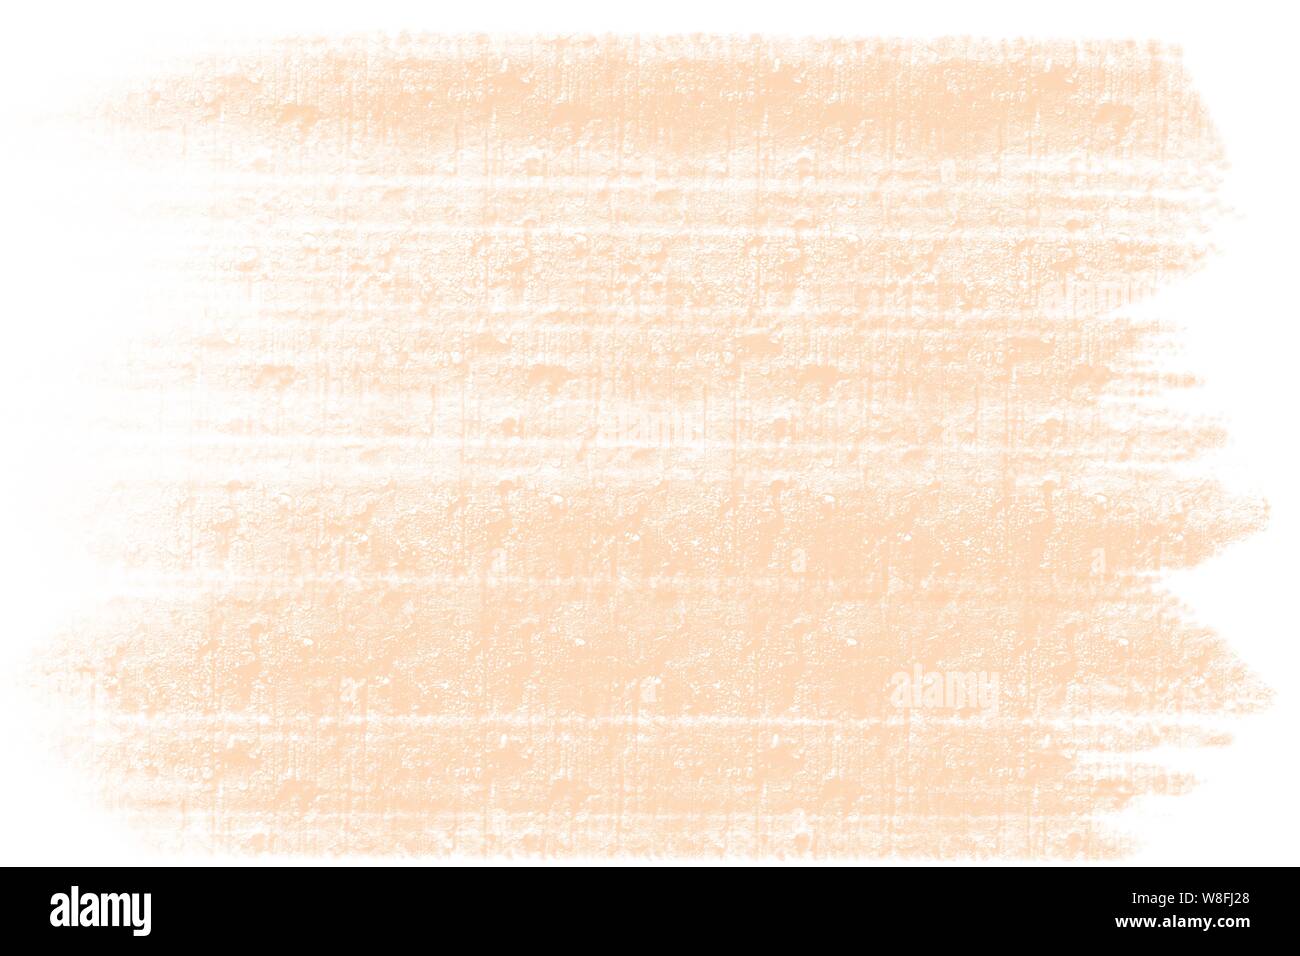 Arancio dolce disegnati a mano ruvida tratto di pennello parete in cemento Sfondo piastrelle pattern con bordi bianchi Foto Stock